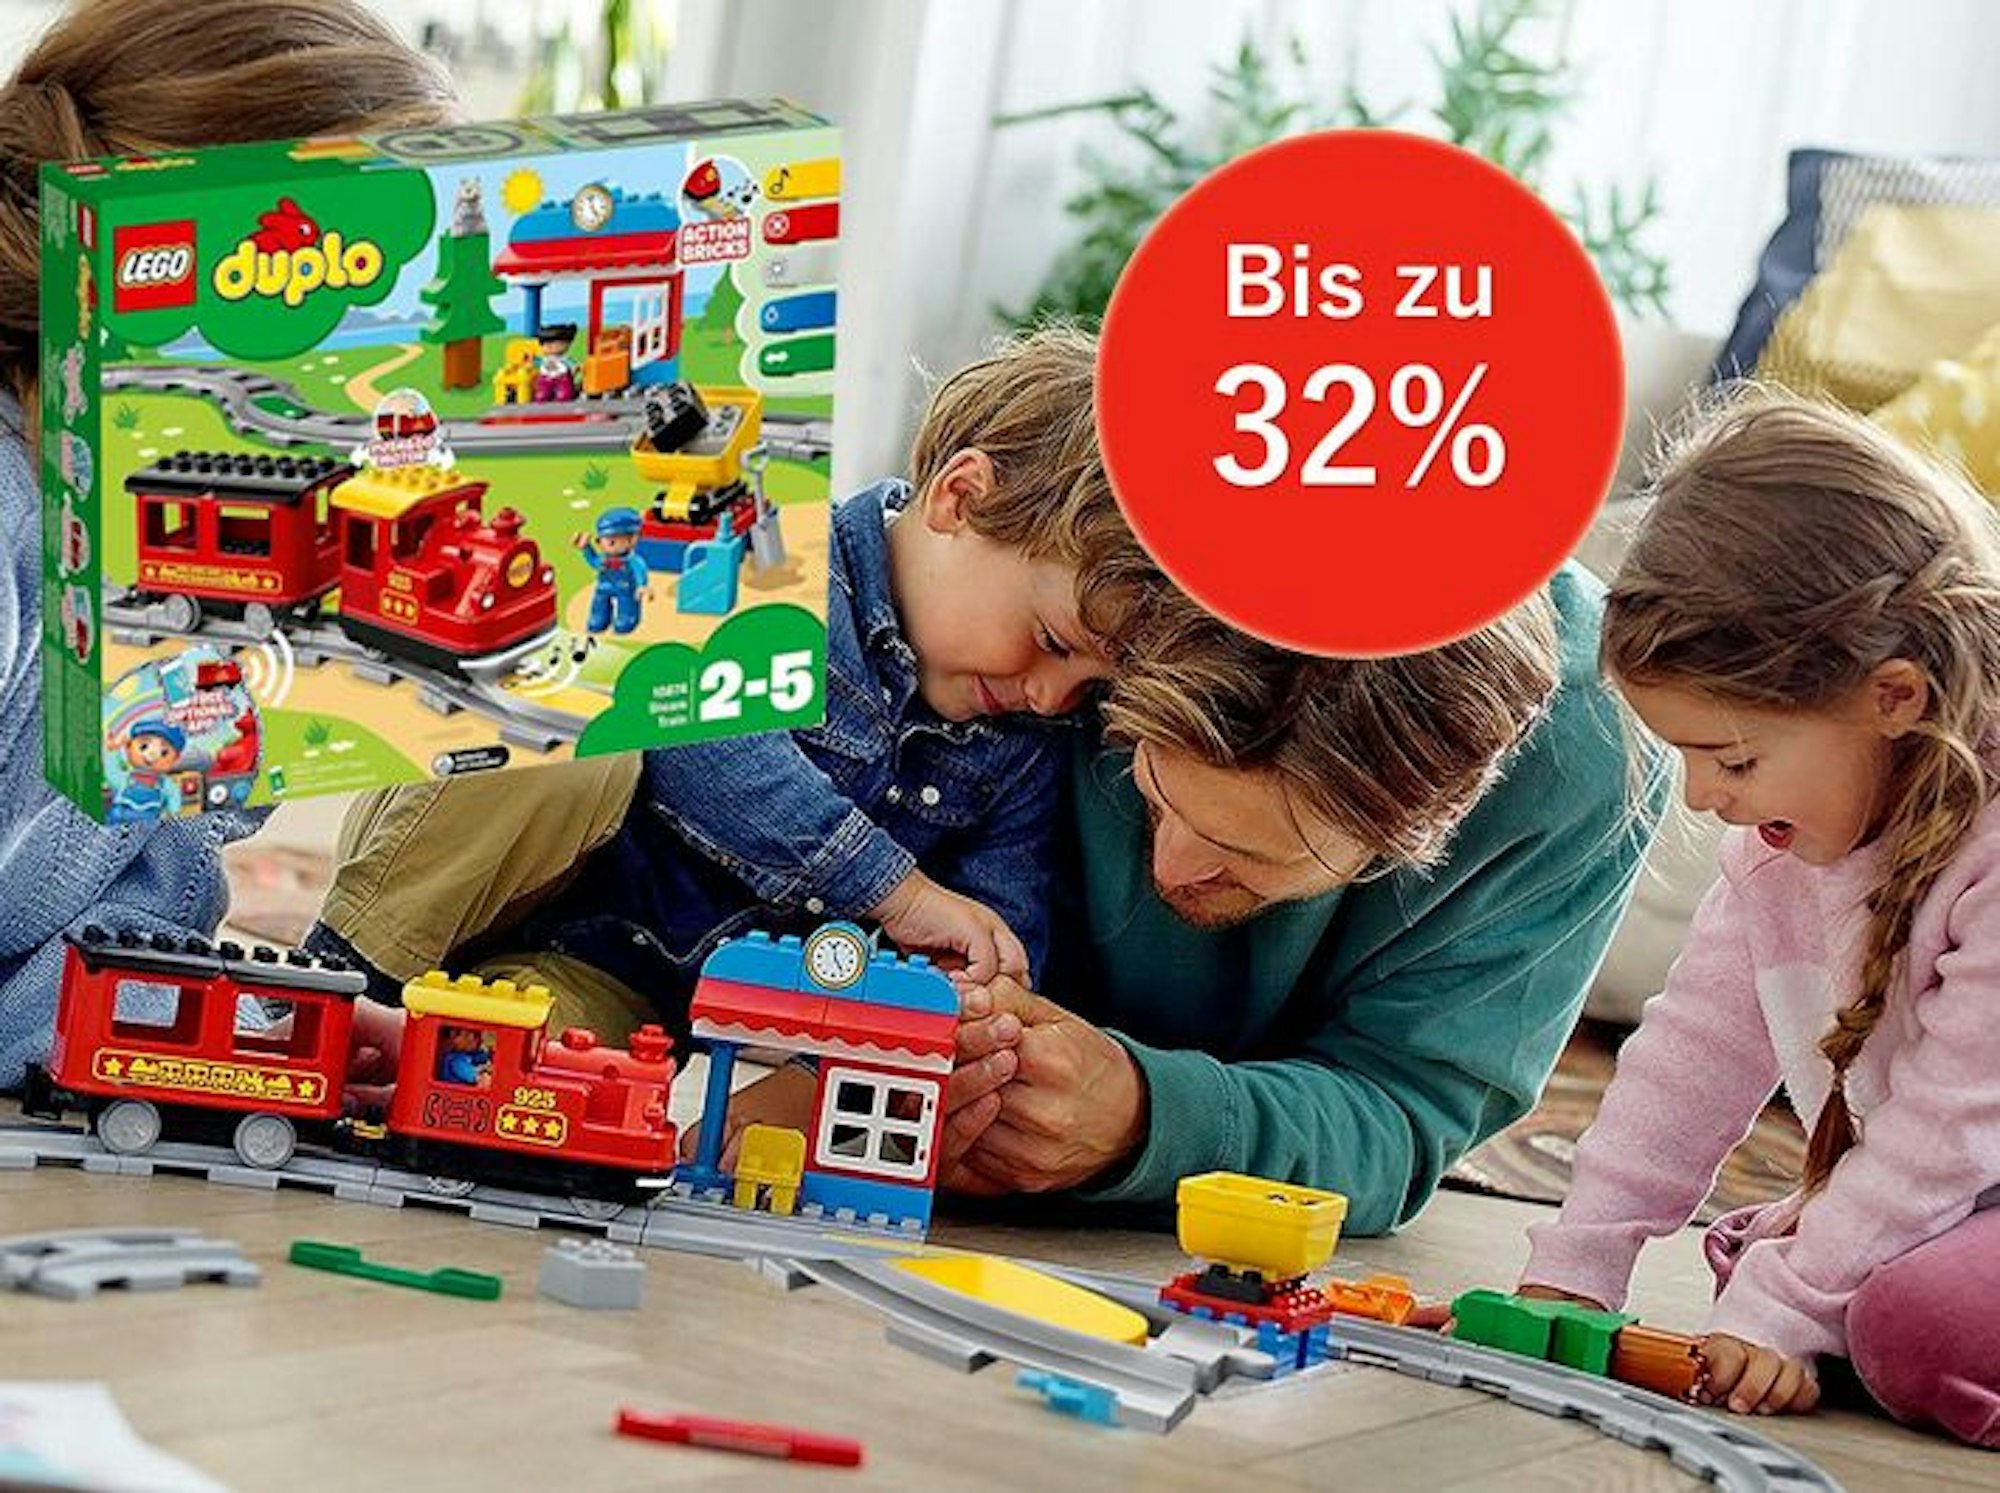 Auf dem Bild ist eine Familie zu sehen, die mit der Lego Duplo Eisenbahn spielt.